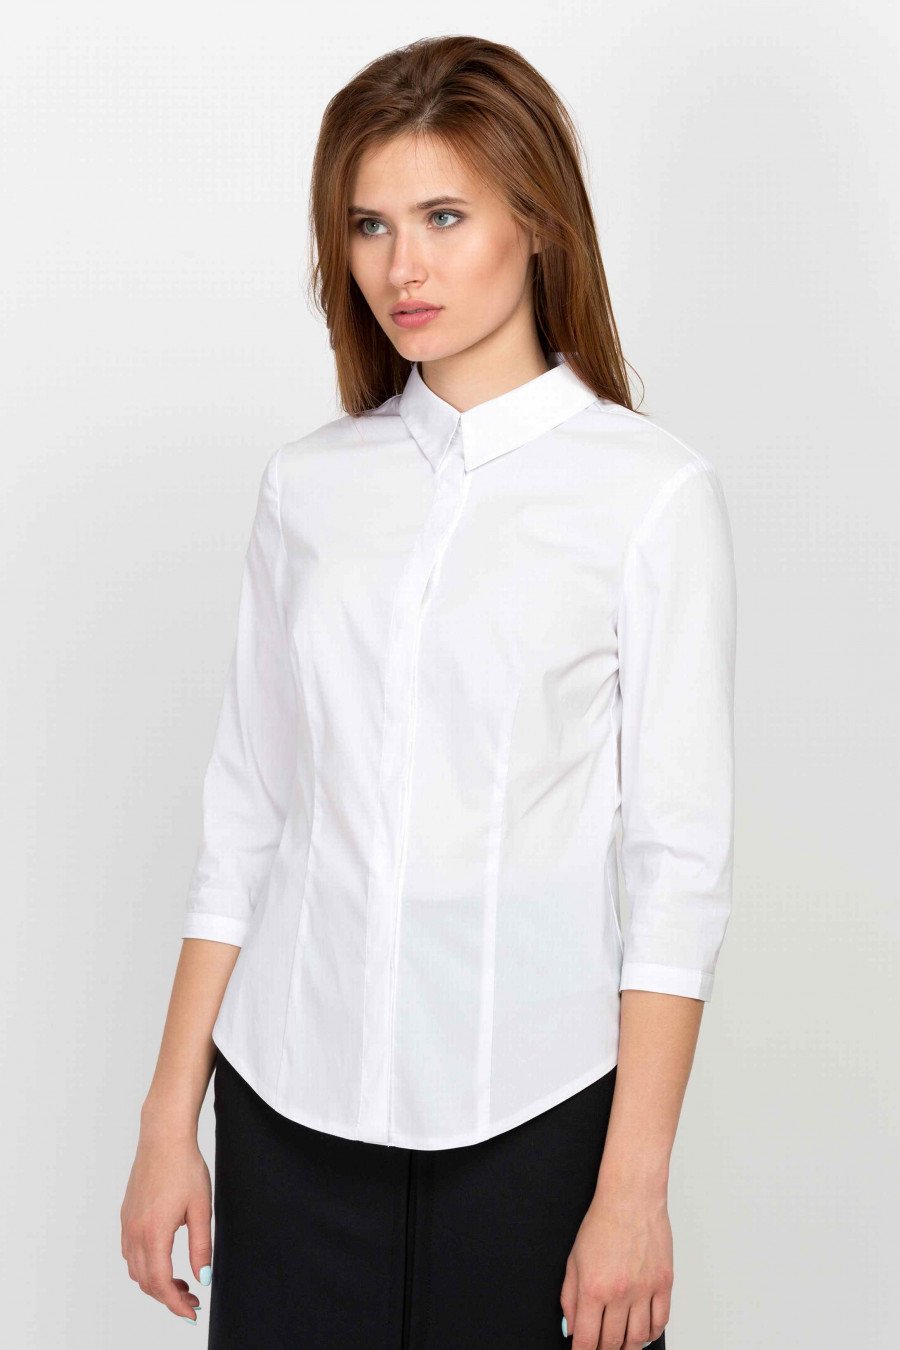 Офисная блузка купить. Белая блузка. Блузки для офиса. Белые блузки для офиса. Белая блузка женская.